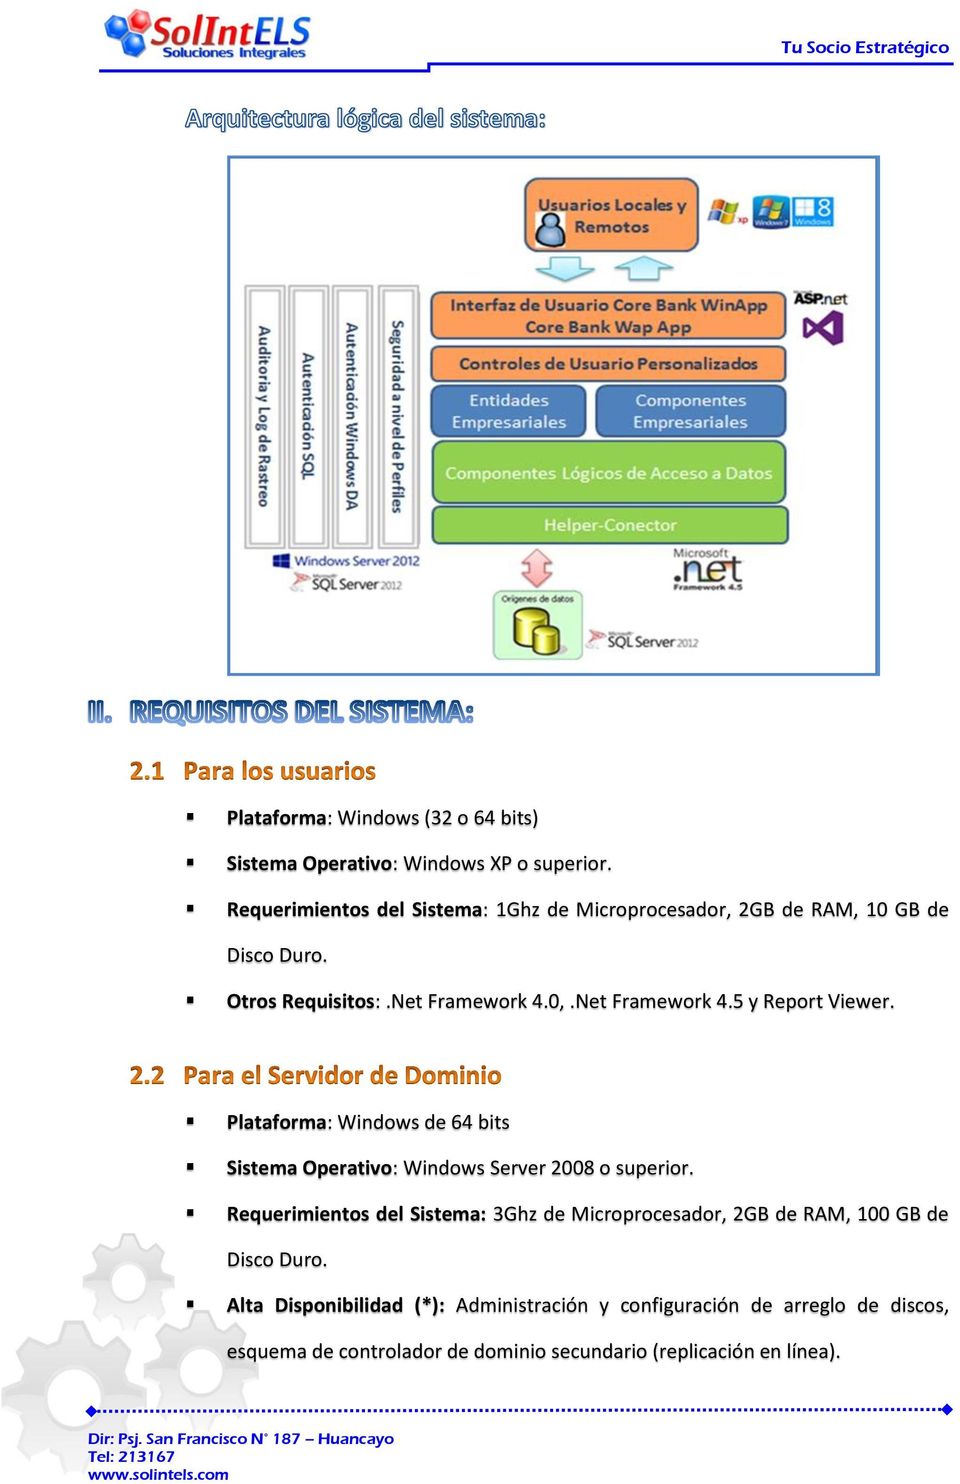 Net Framework 4.5 y Report Viewer. Plataforma: Windows de 64 bits Sistema Operativo: Windows Server 2008 o superior.